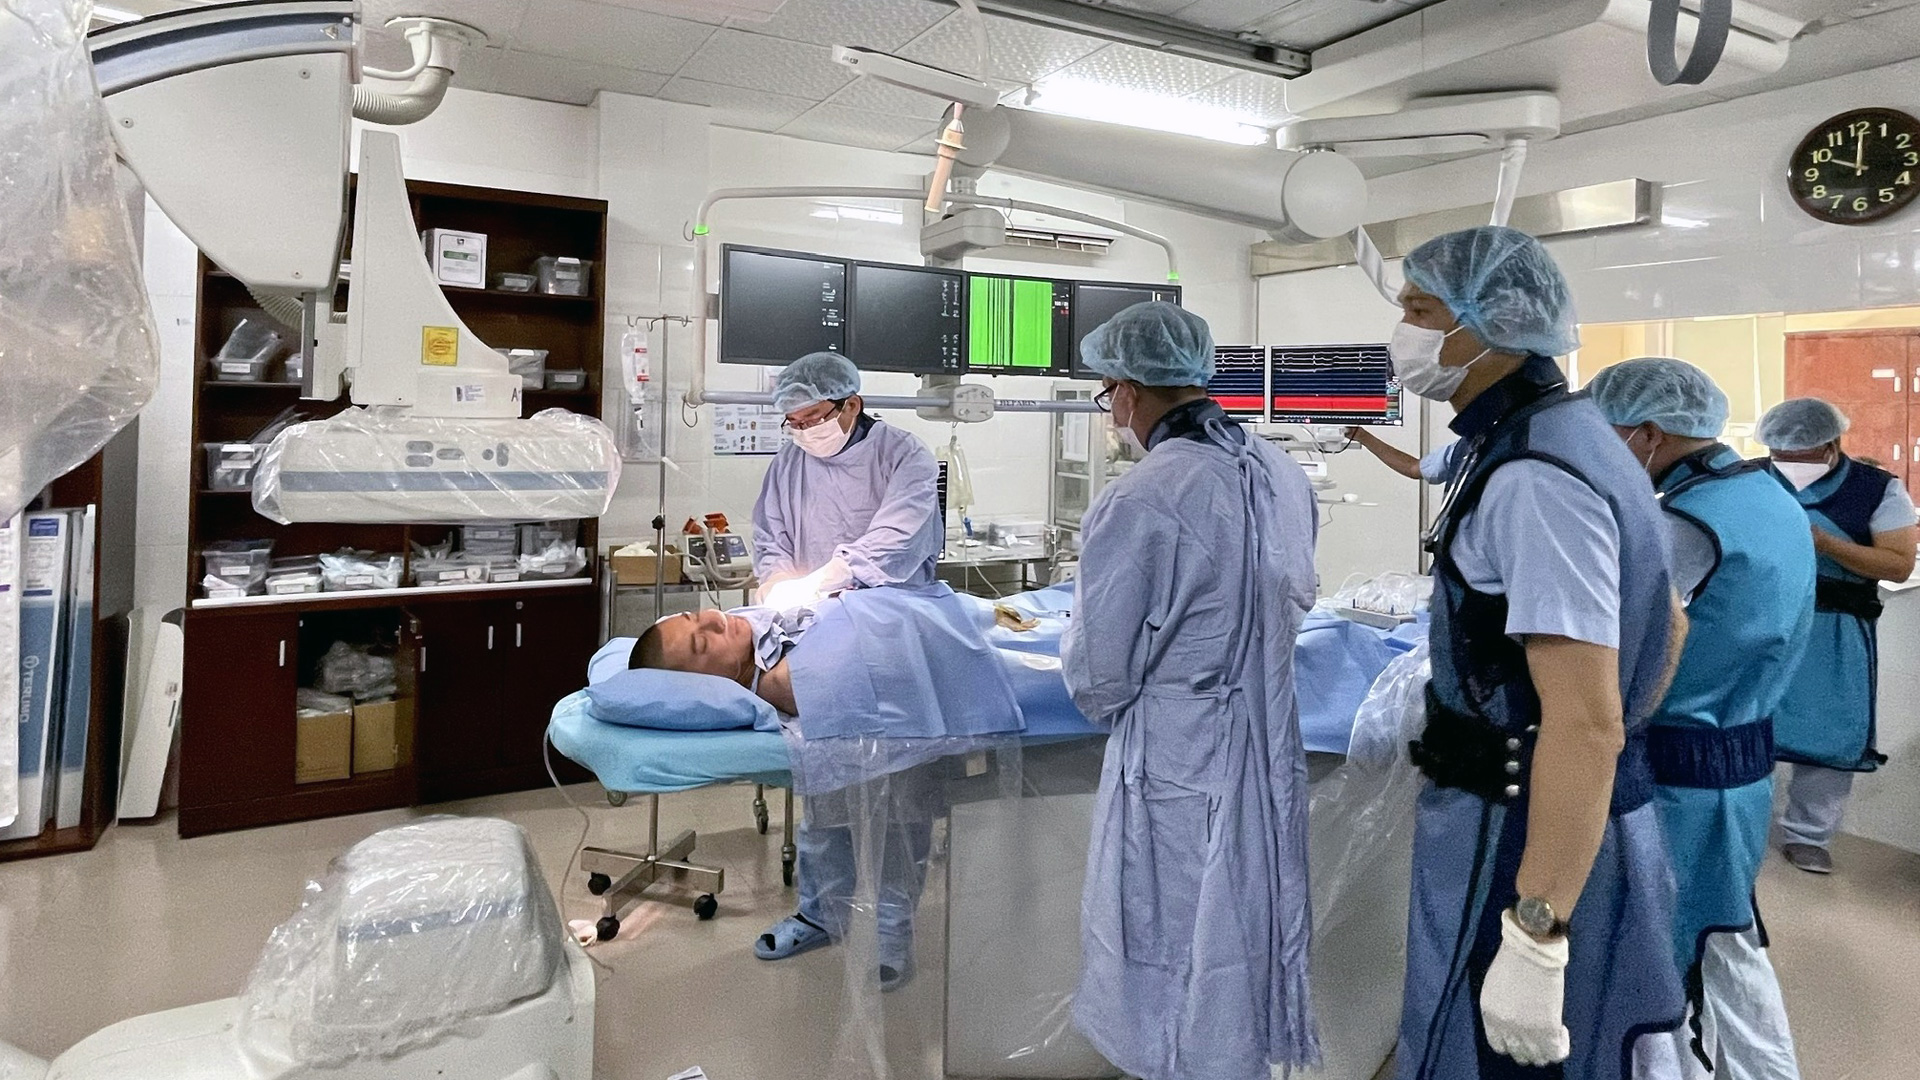 Ngành Y tế Lâm Đồng chú trọng đào tạo, bồi dưỡng chuyên môn cho cán bộ, nhân viên y tế để thực hiện có hiệu quả các kỹ thuật cao phục vụ người bệnh tại địa phương